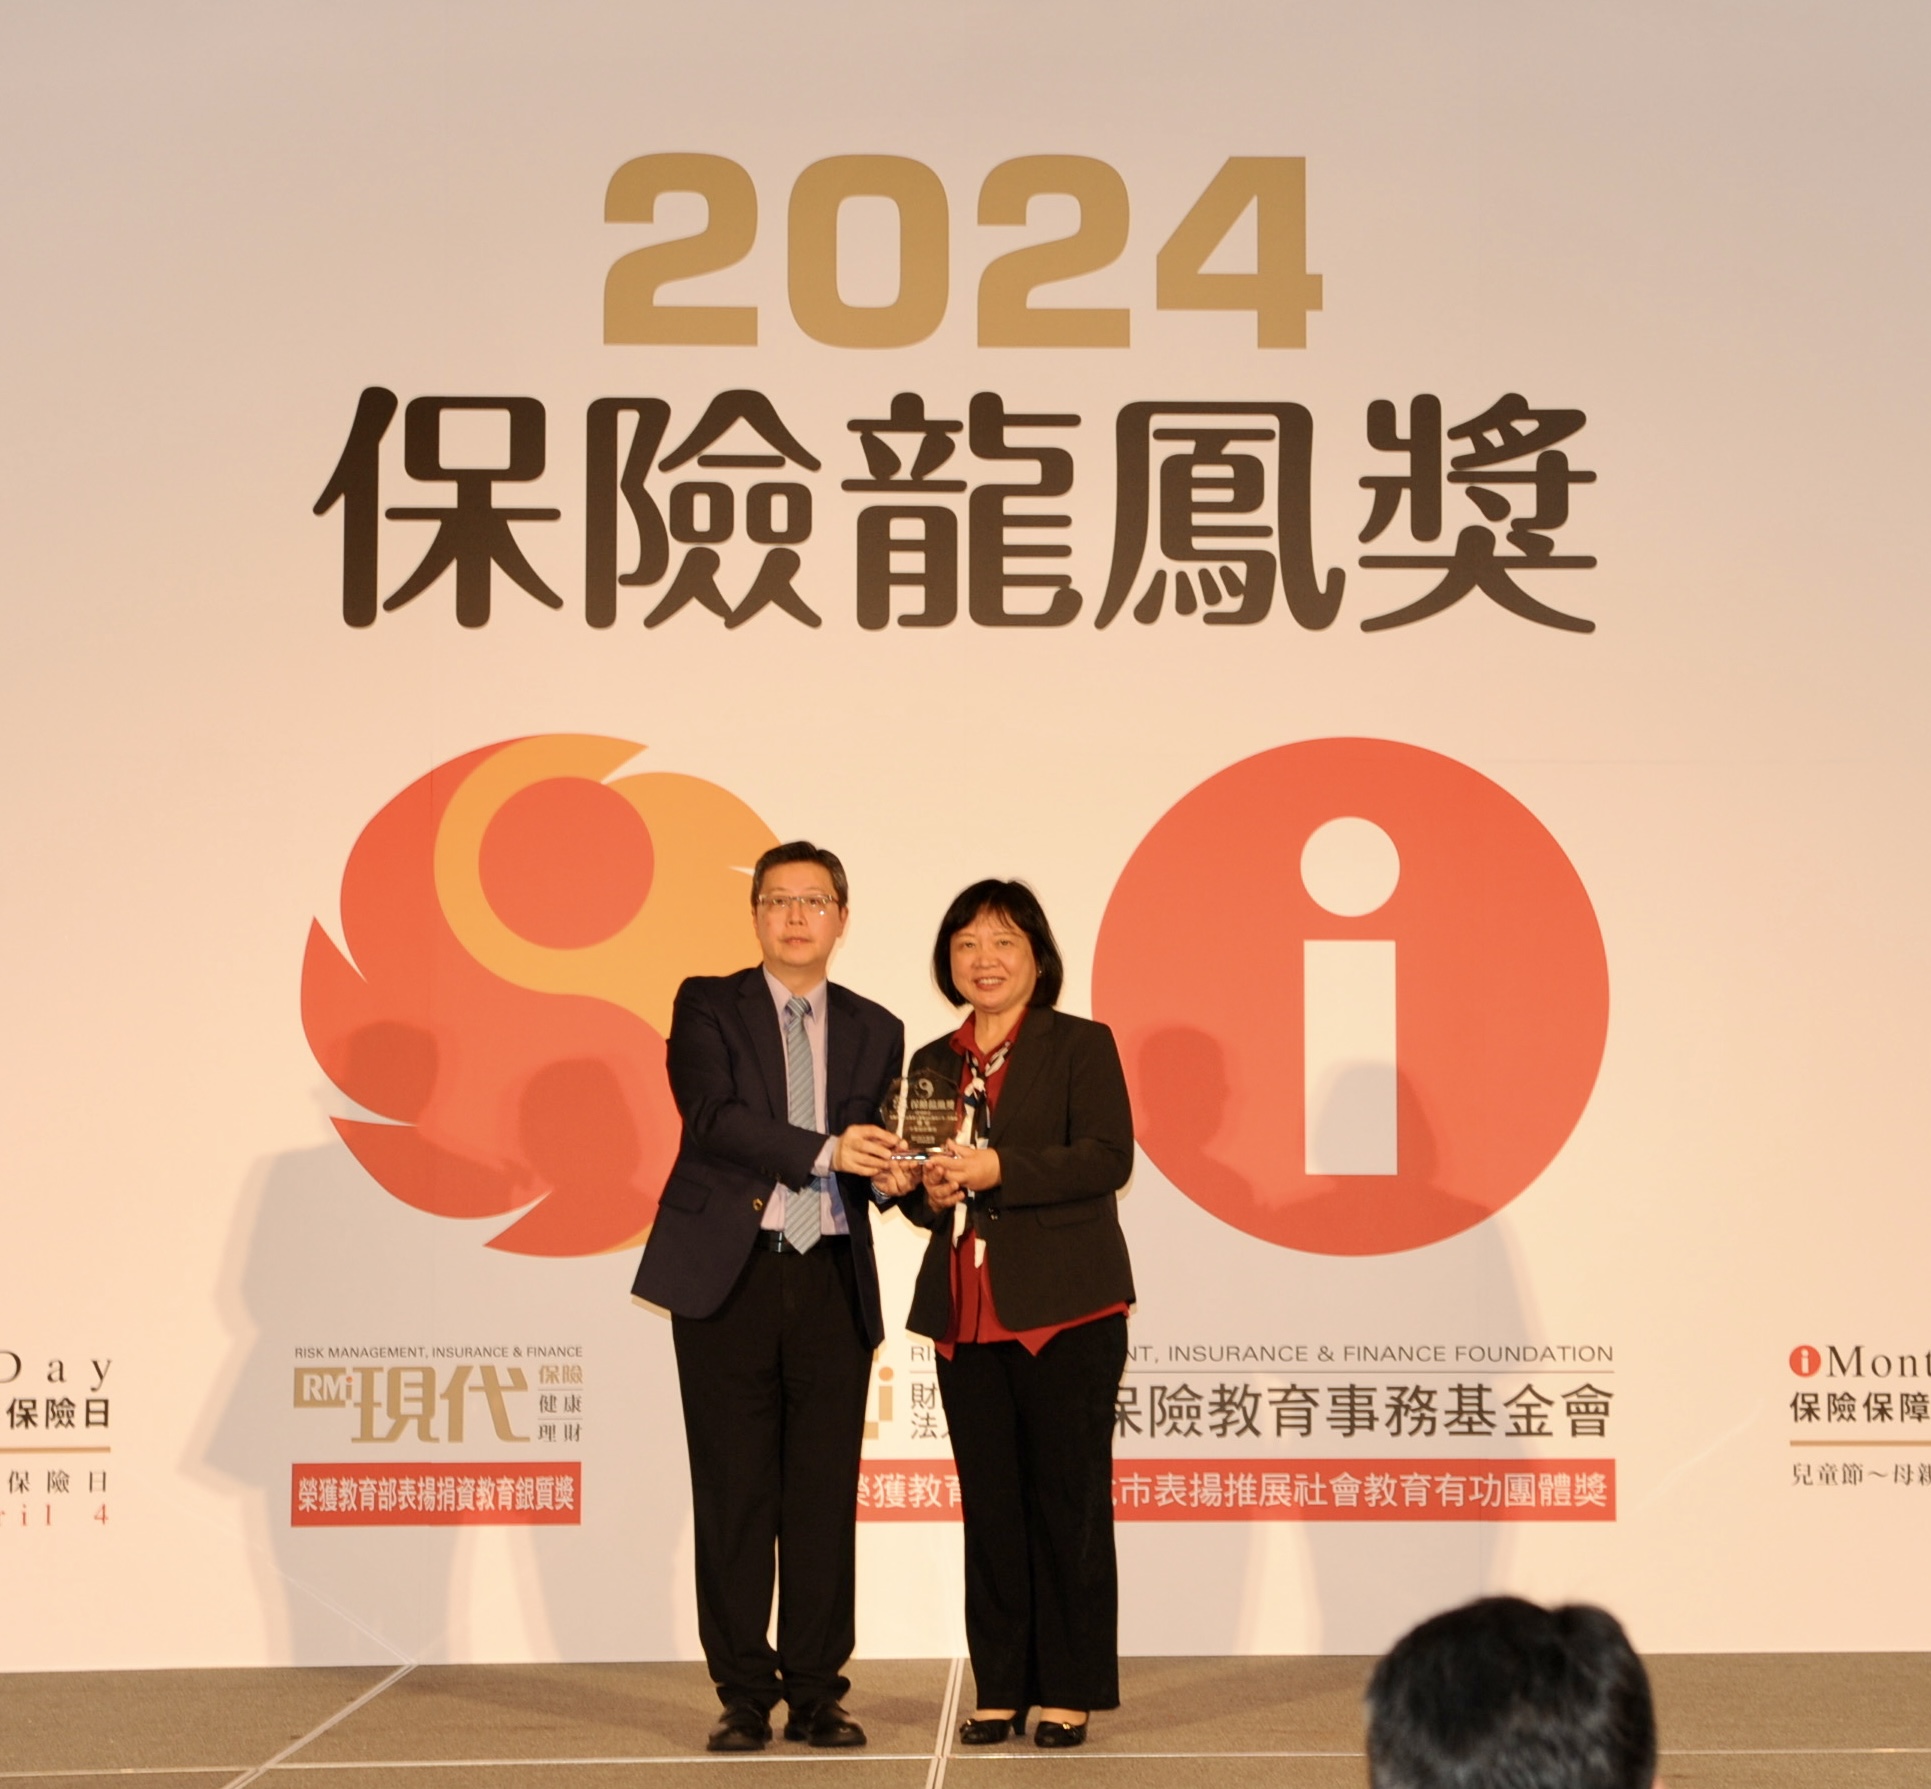 中華郵政榮獲「2024保險龍鳳獎」3獎項殊榮